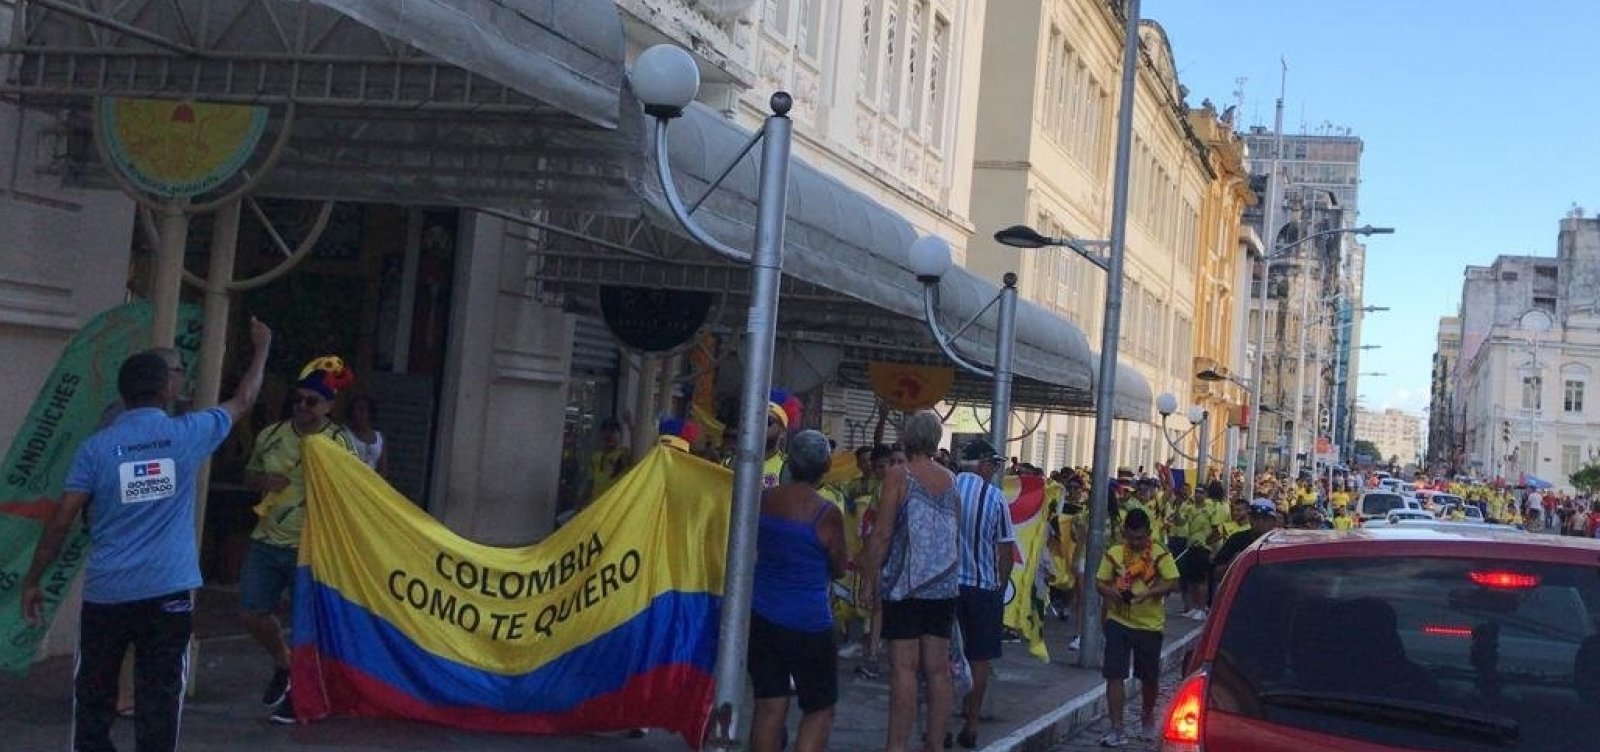 Torcida da Colômbia anima ruas do Centro Histórico de Salvador